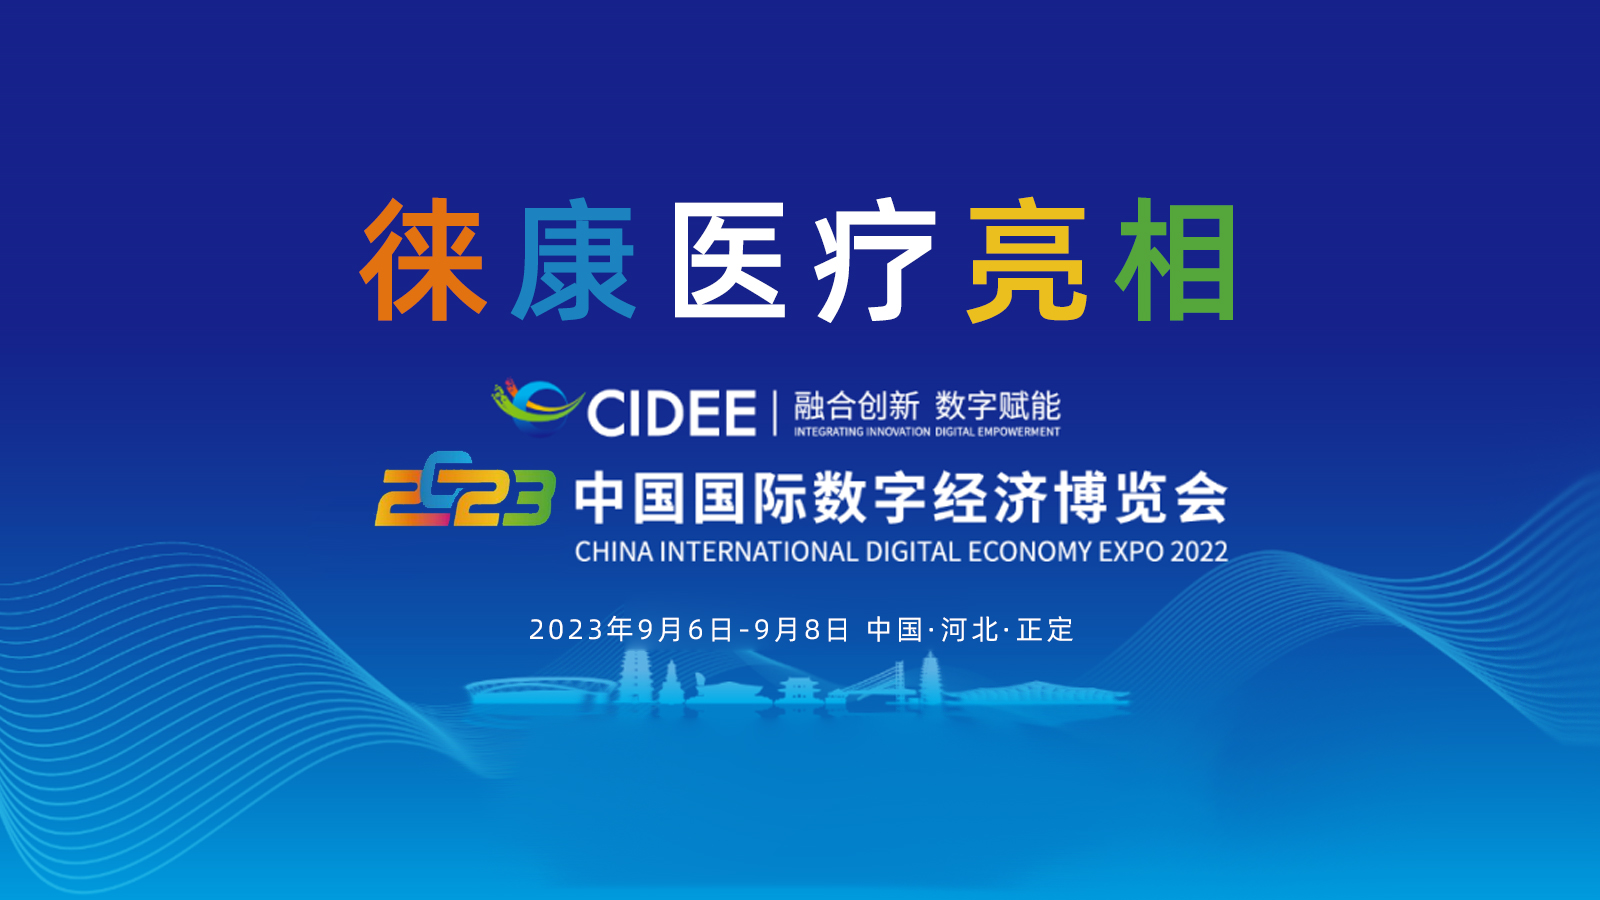 徠康醫療亮相2023中國國際數字經濟博覽會